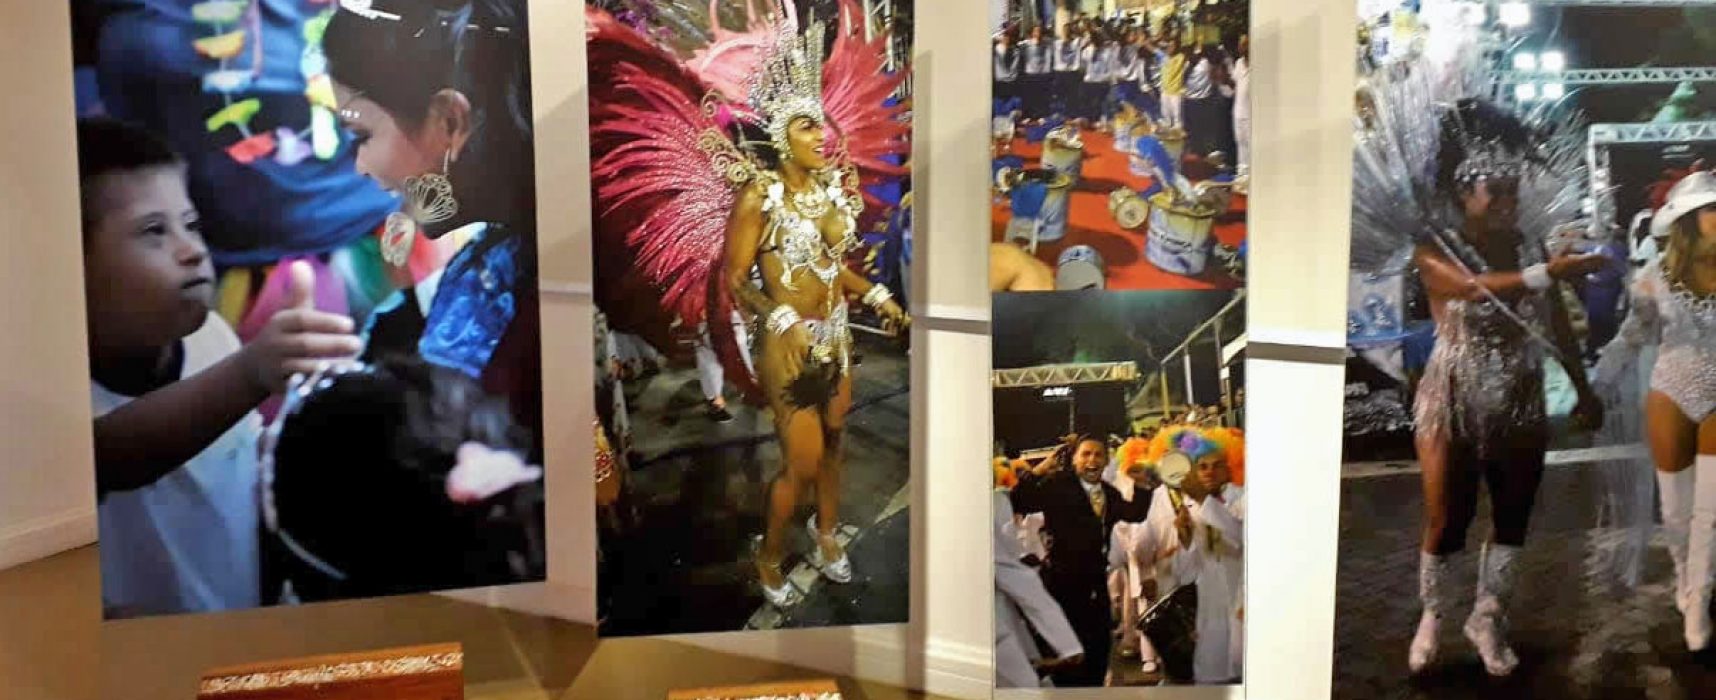 Inauguração da Exposição “Cenas do Carnaval da Vela” ocorre nesta quinta-feira